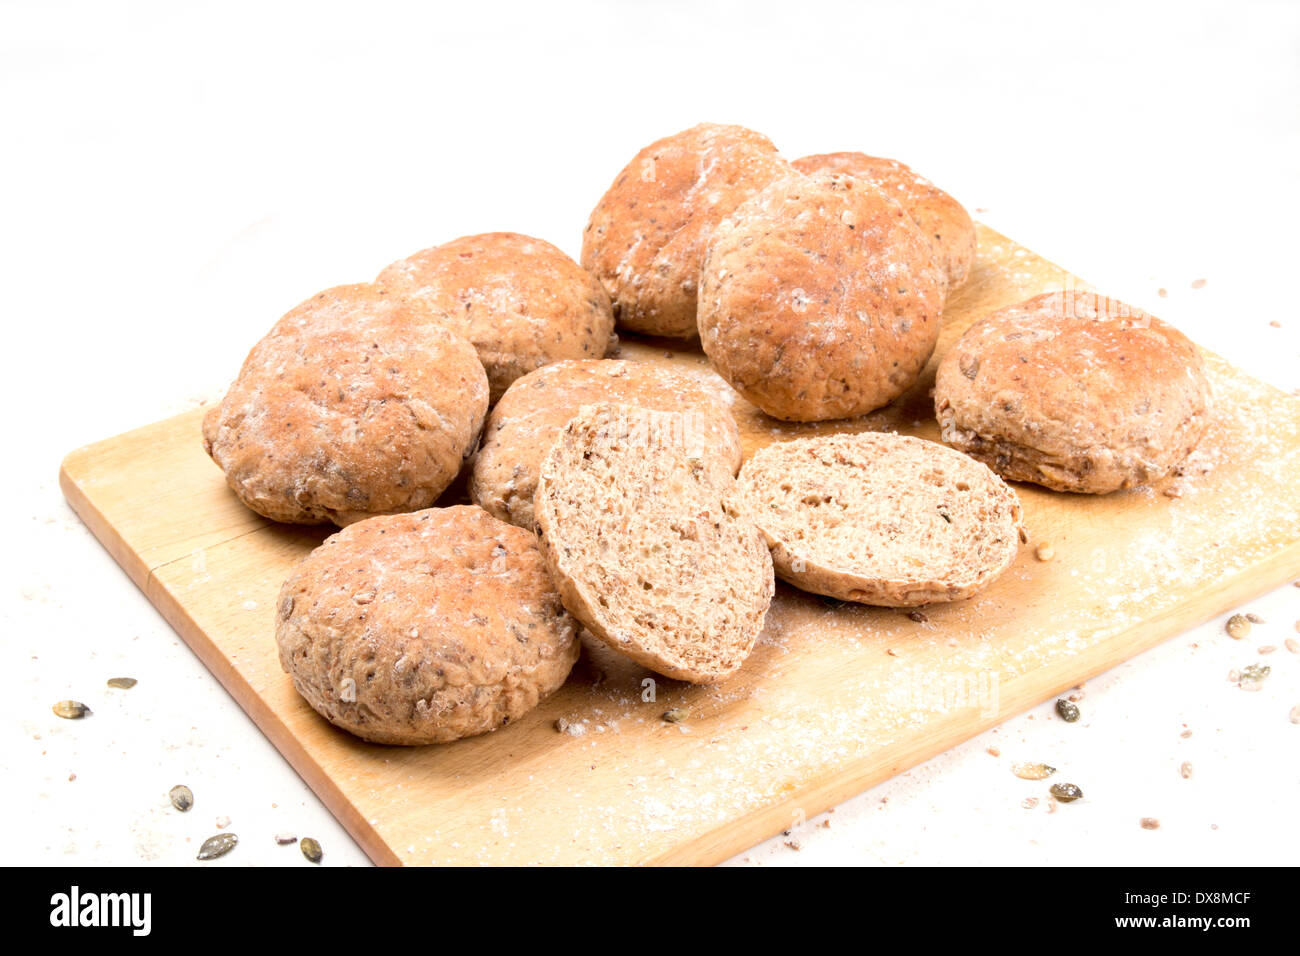 braune Getreidespeicher Brot Brötchen/Baps/Kuchen auf einem Brot-Brett mit einem geschnittenen Brötchen (10 von 15) Stockfoto